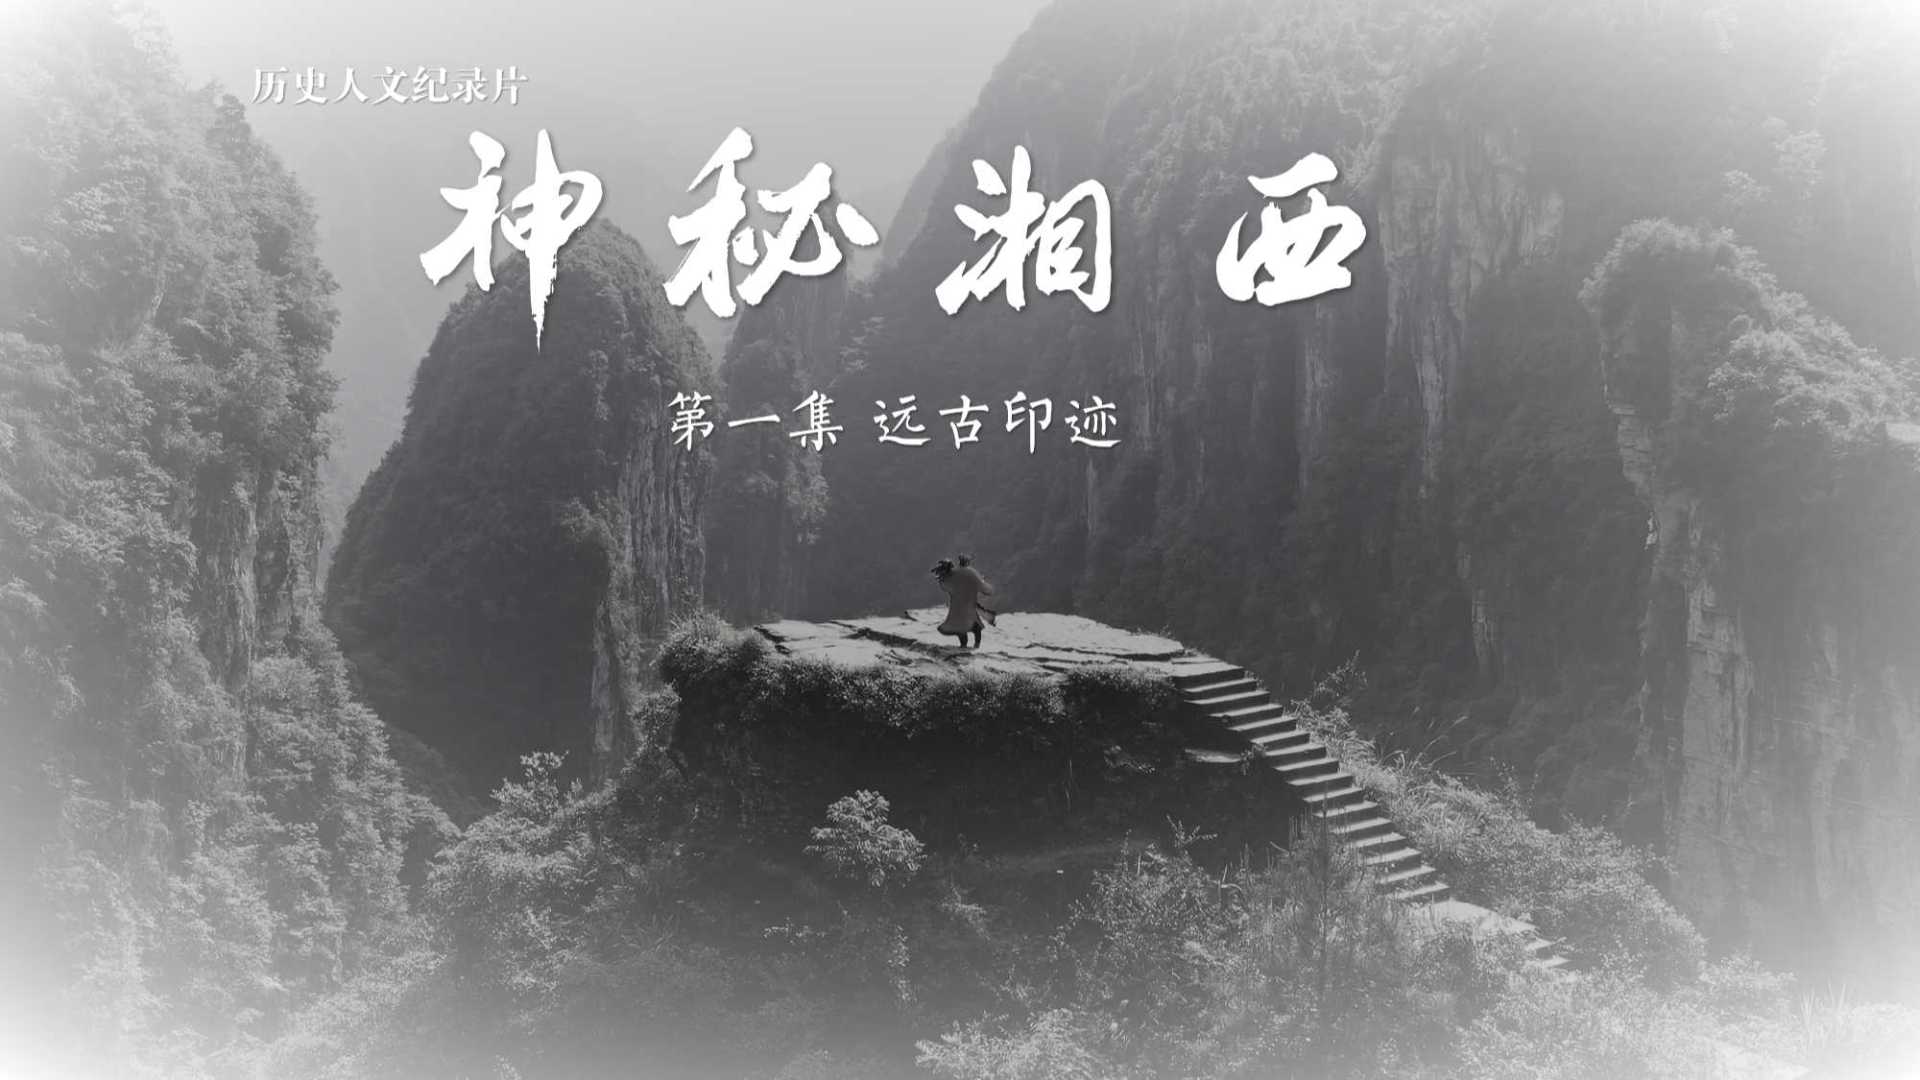 历史人文纪录片 《神秘湘西》第一集 远古印迹